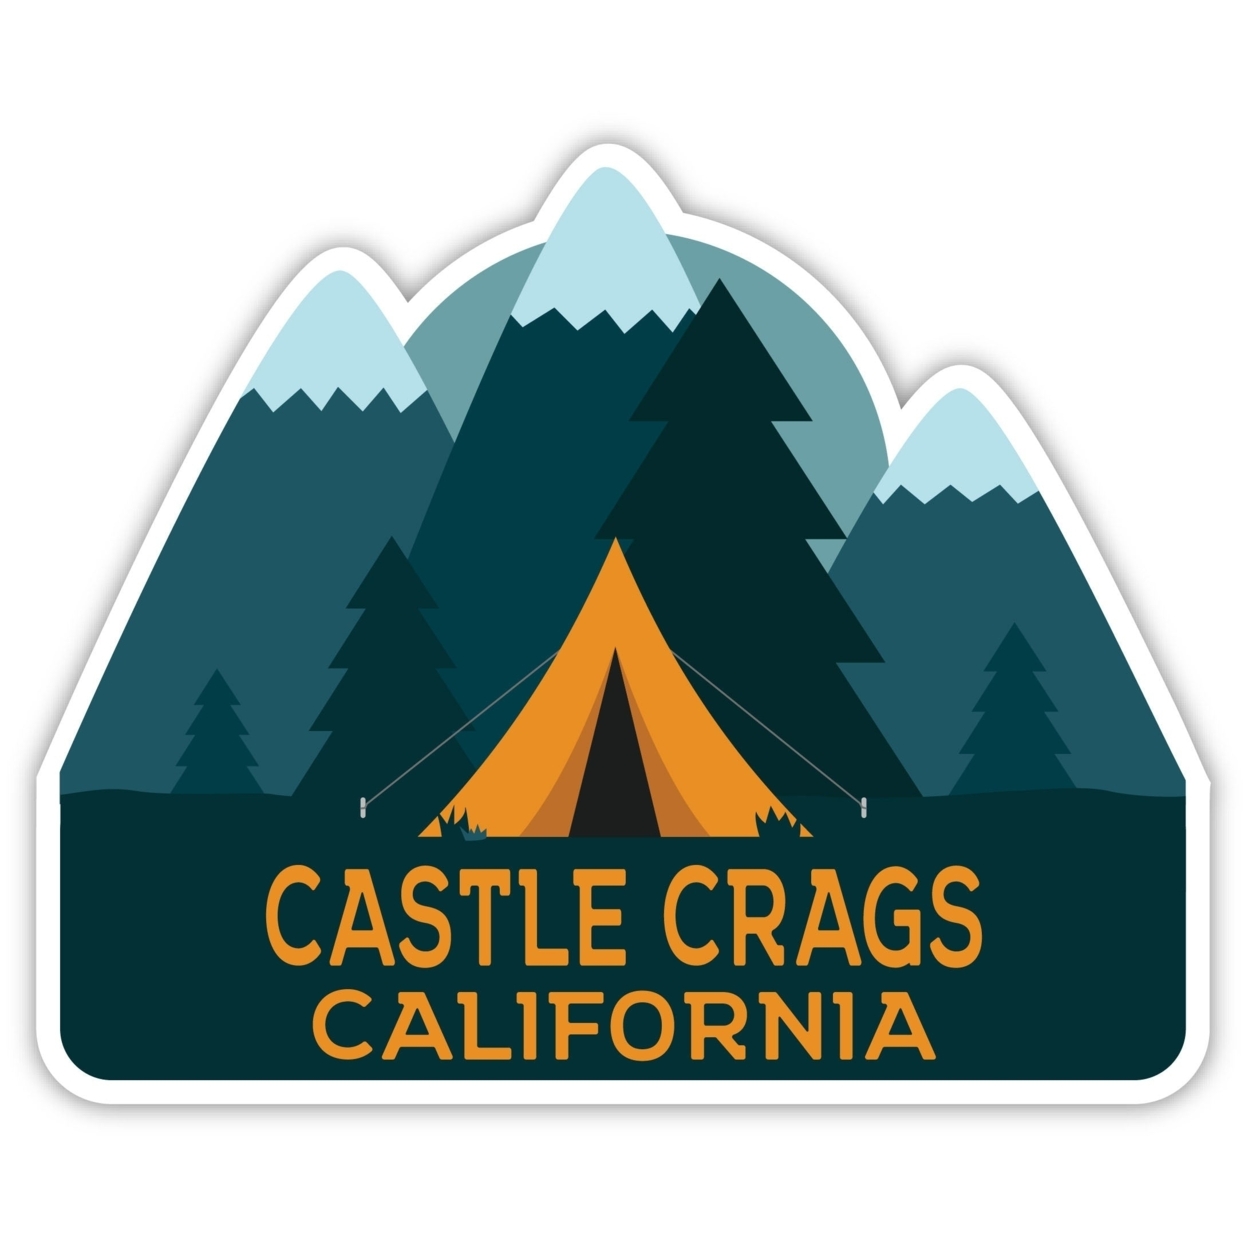 Castle Crags California Souvenir Decorative Stickers (Choose Theme And Size) - Single Unit, 8-Inch, Tent